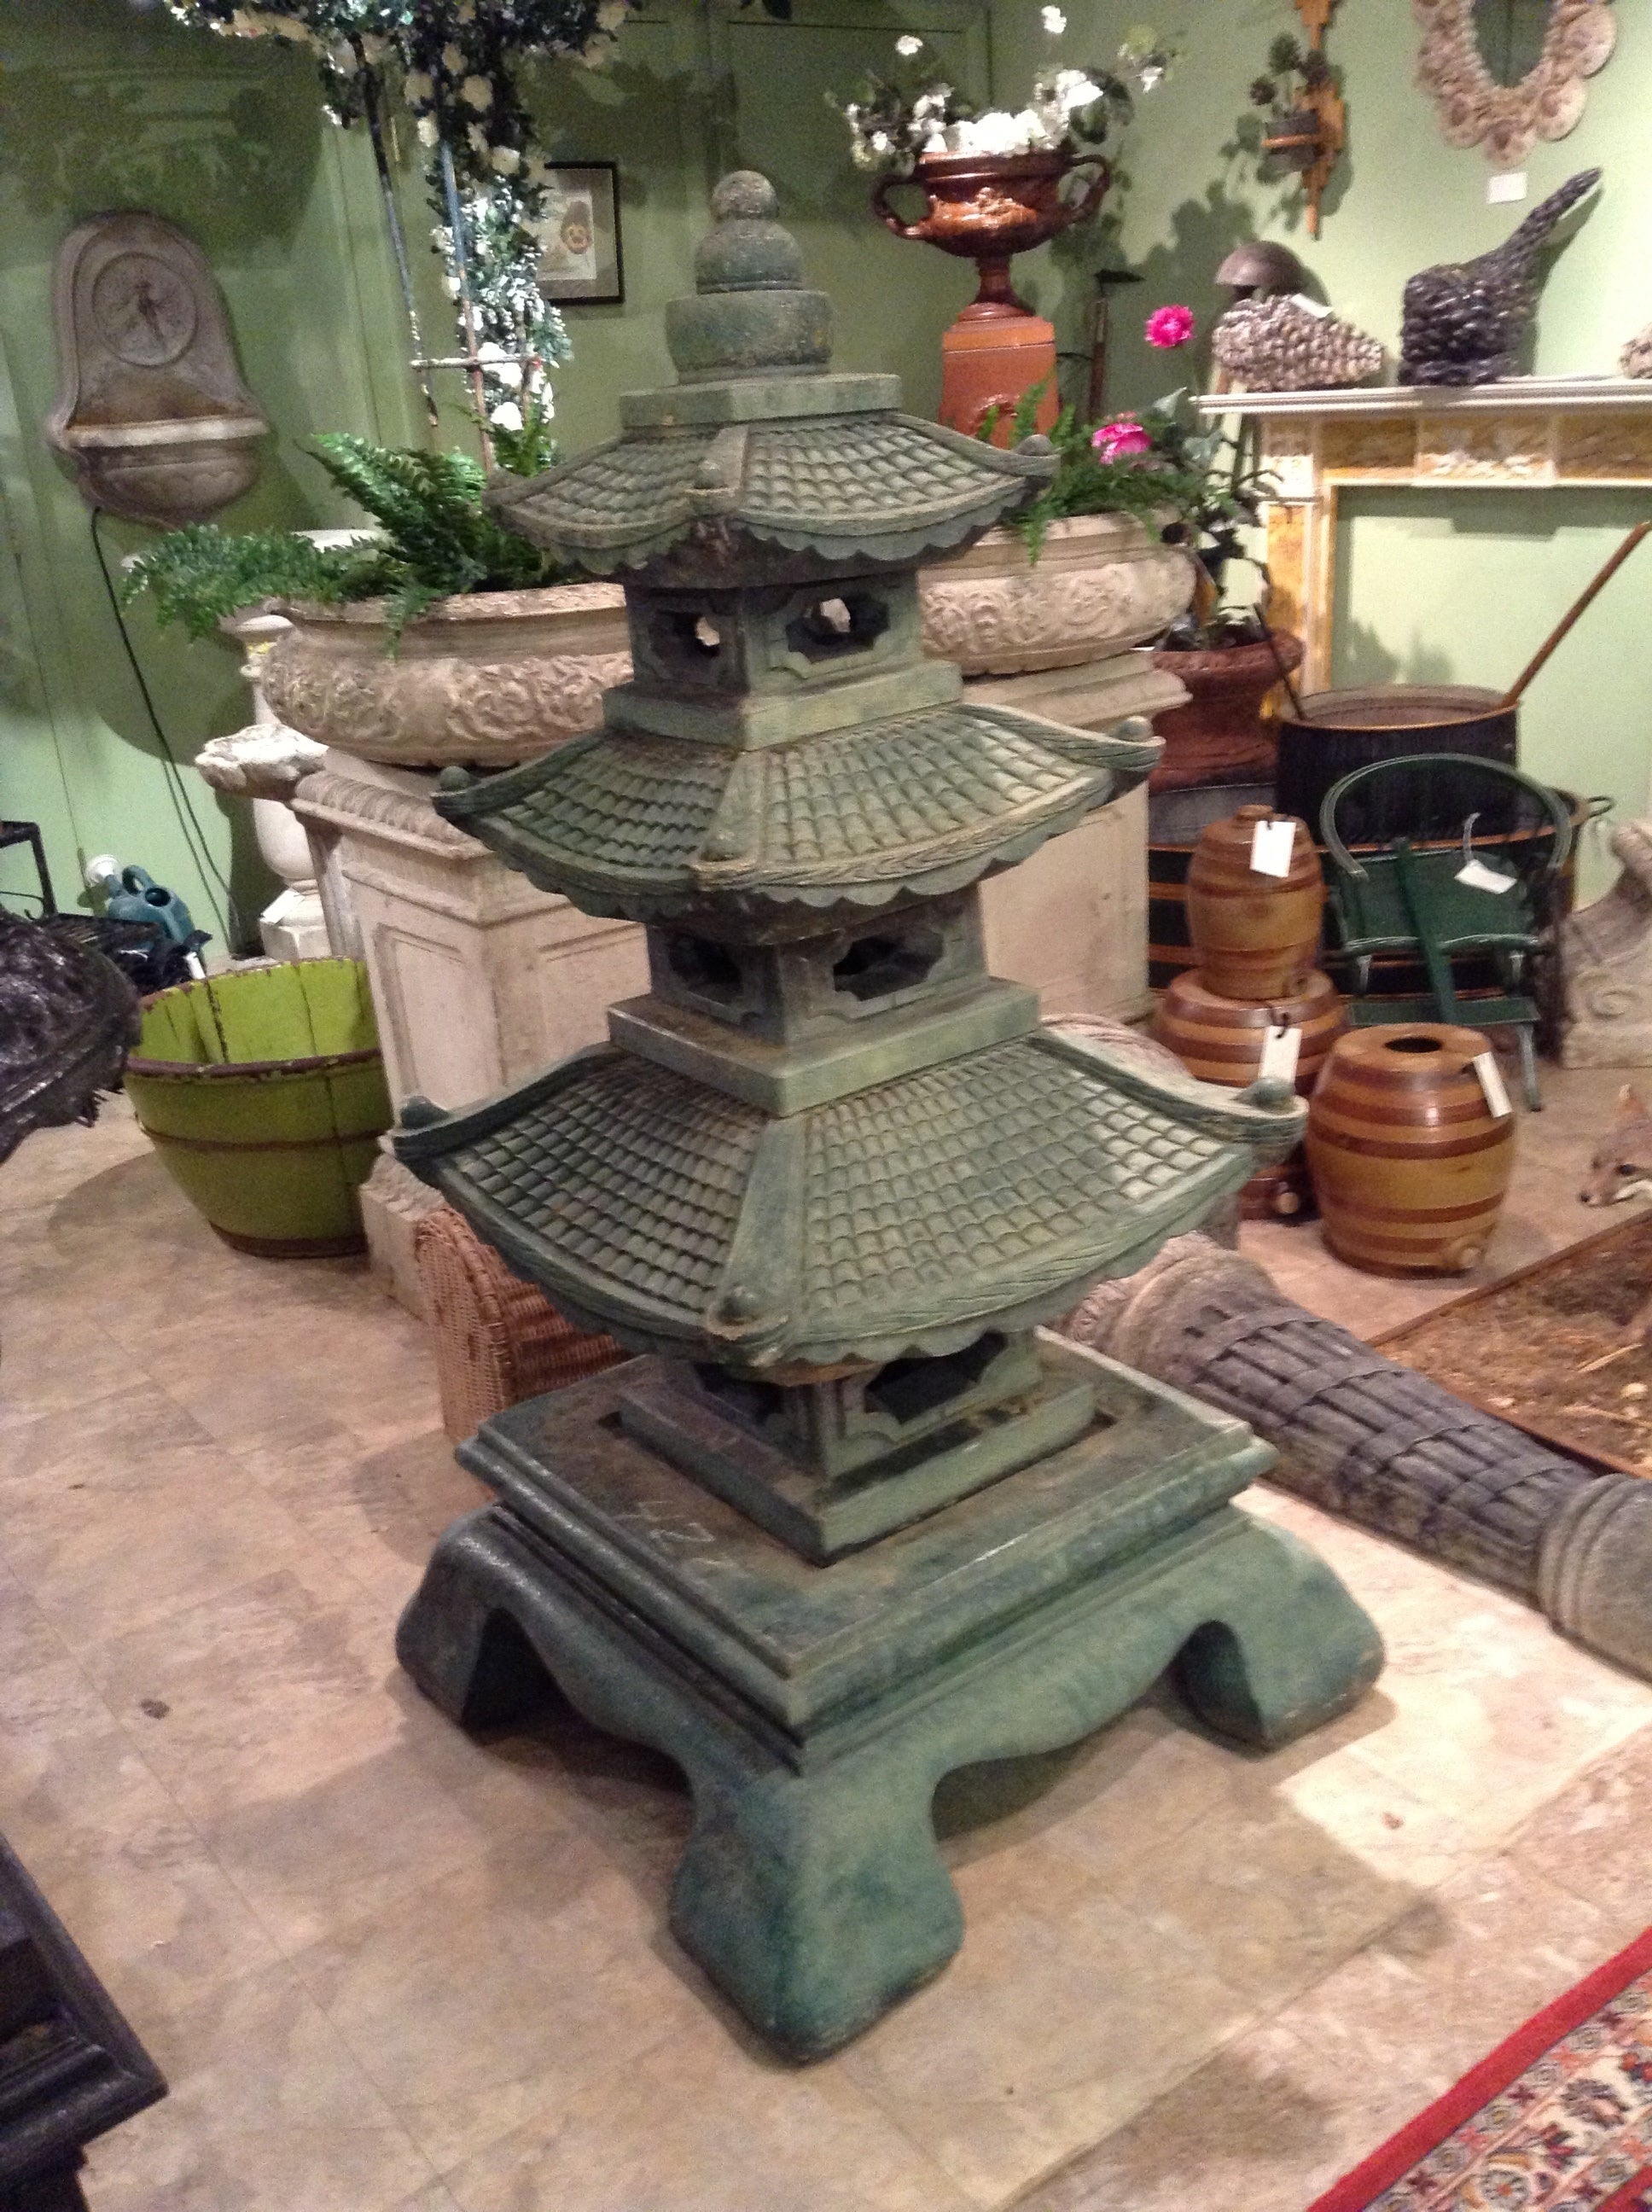 Chinese Pagoda Garden Statuary